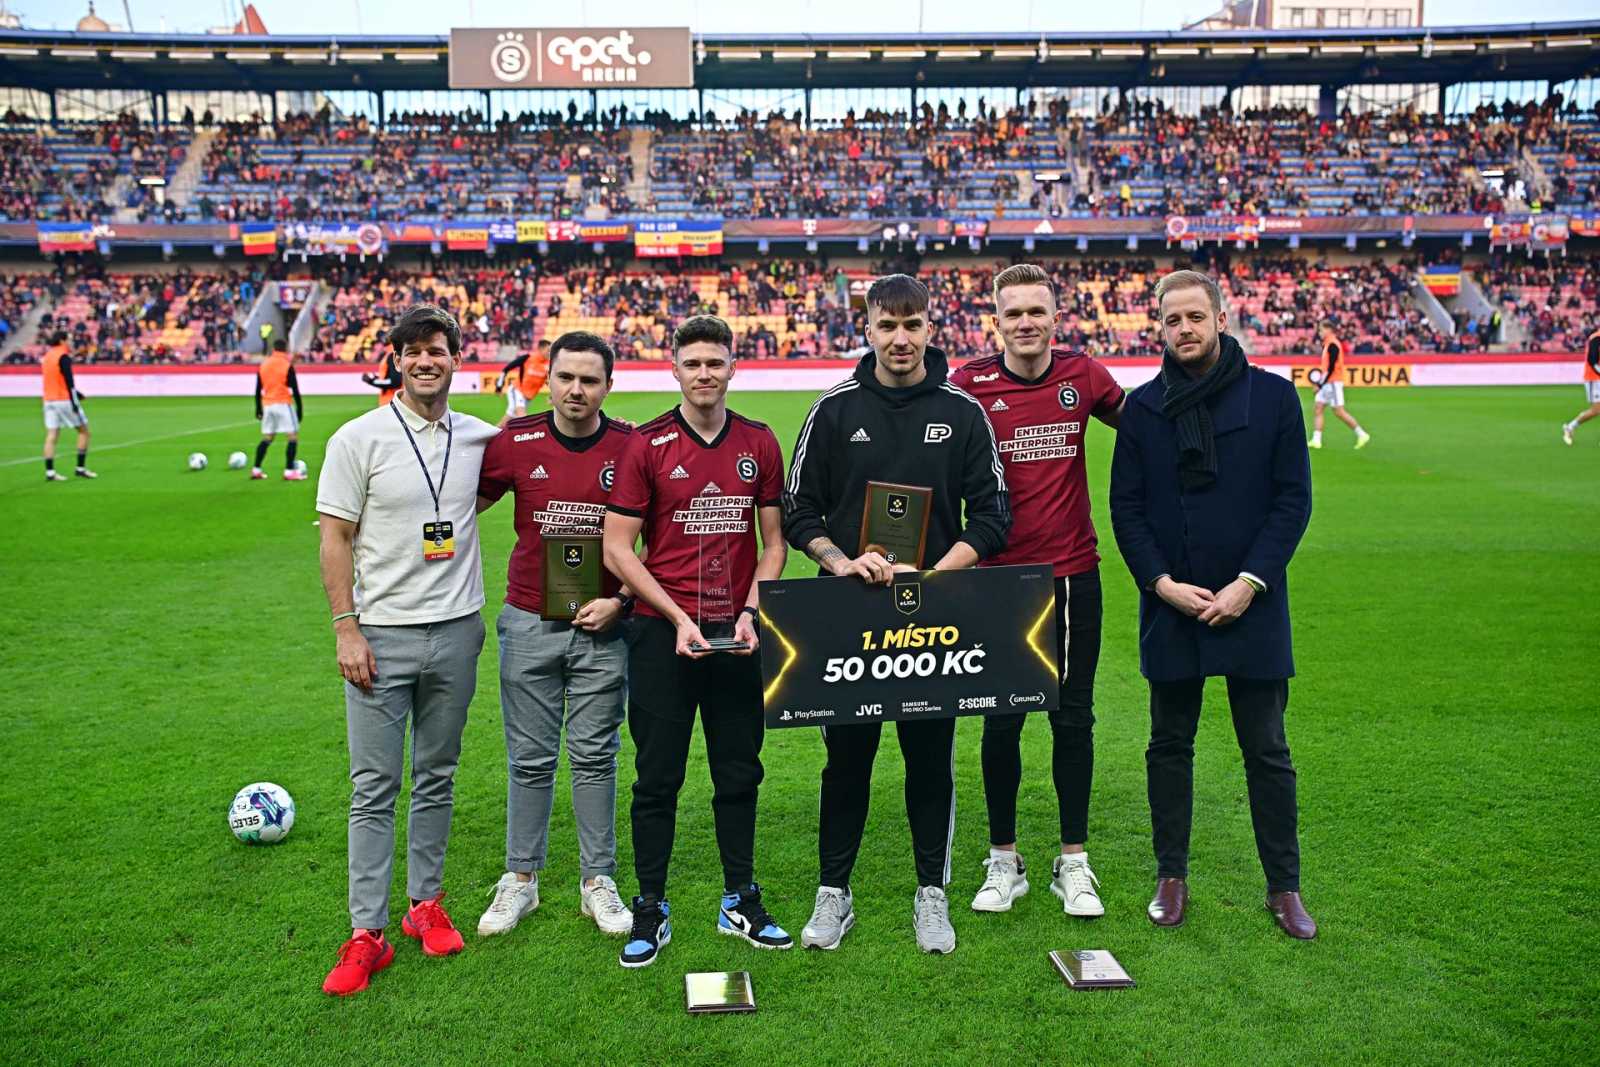 Trofej předali zástupci Ligové fotbalové asociace.